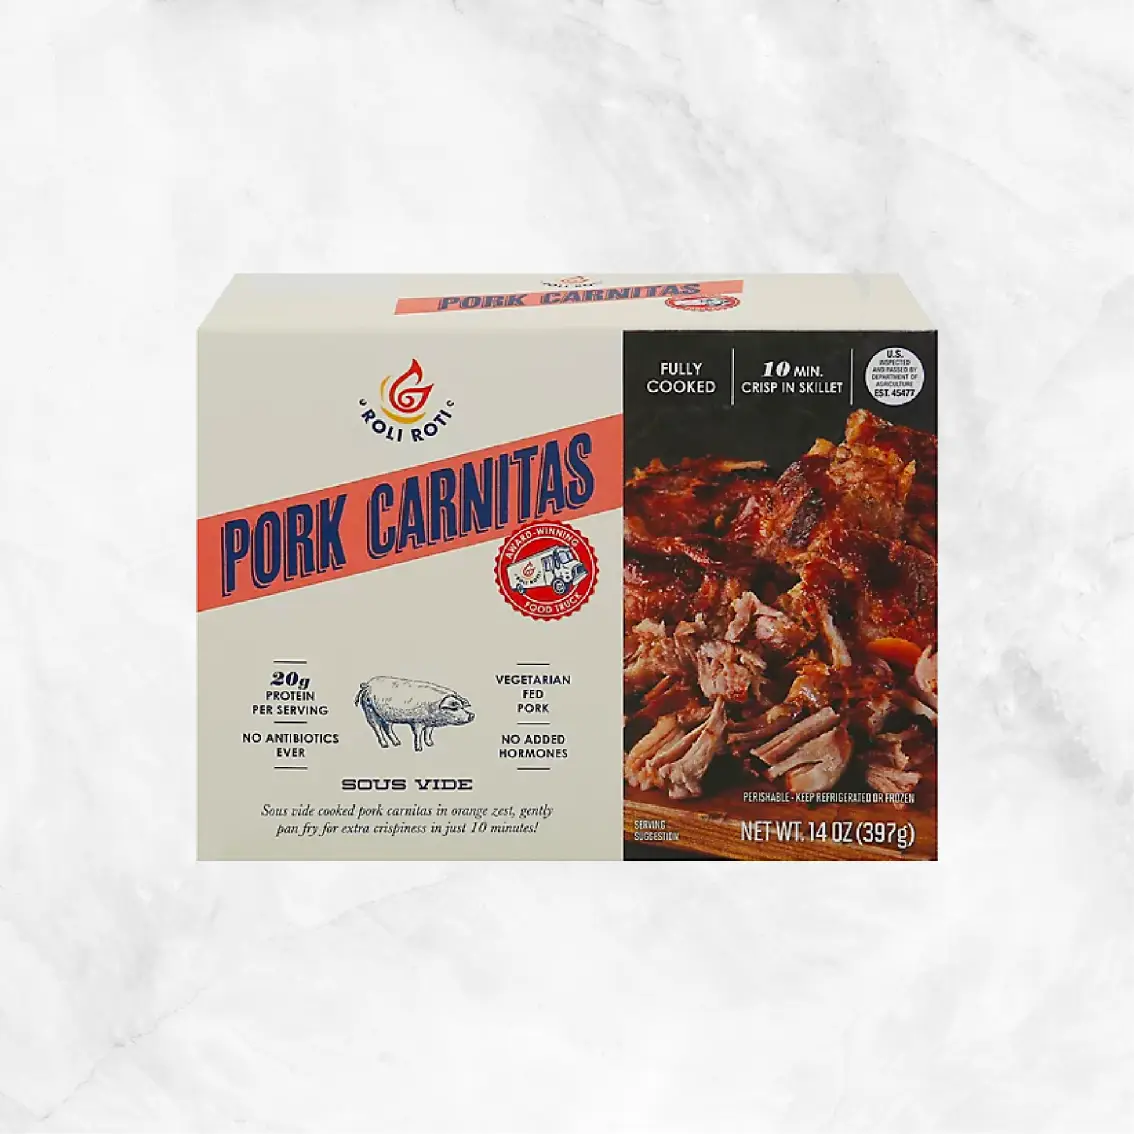 Pork Carnitas Delivery